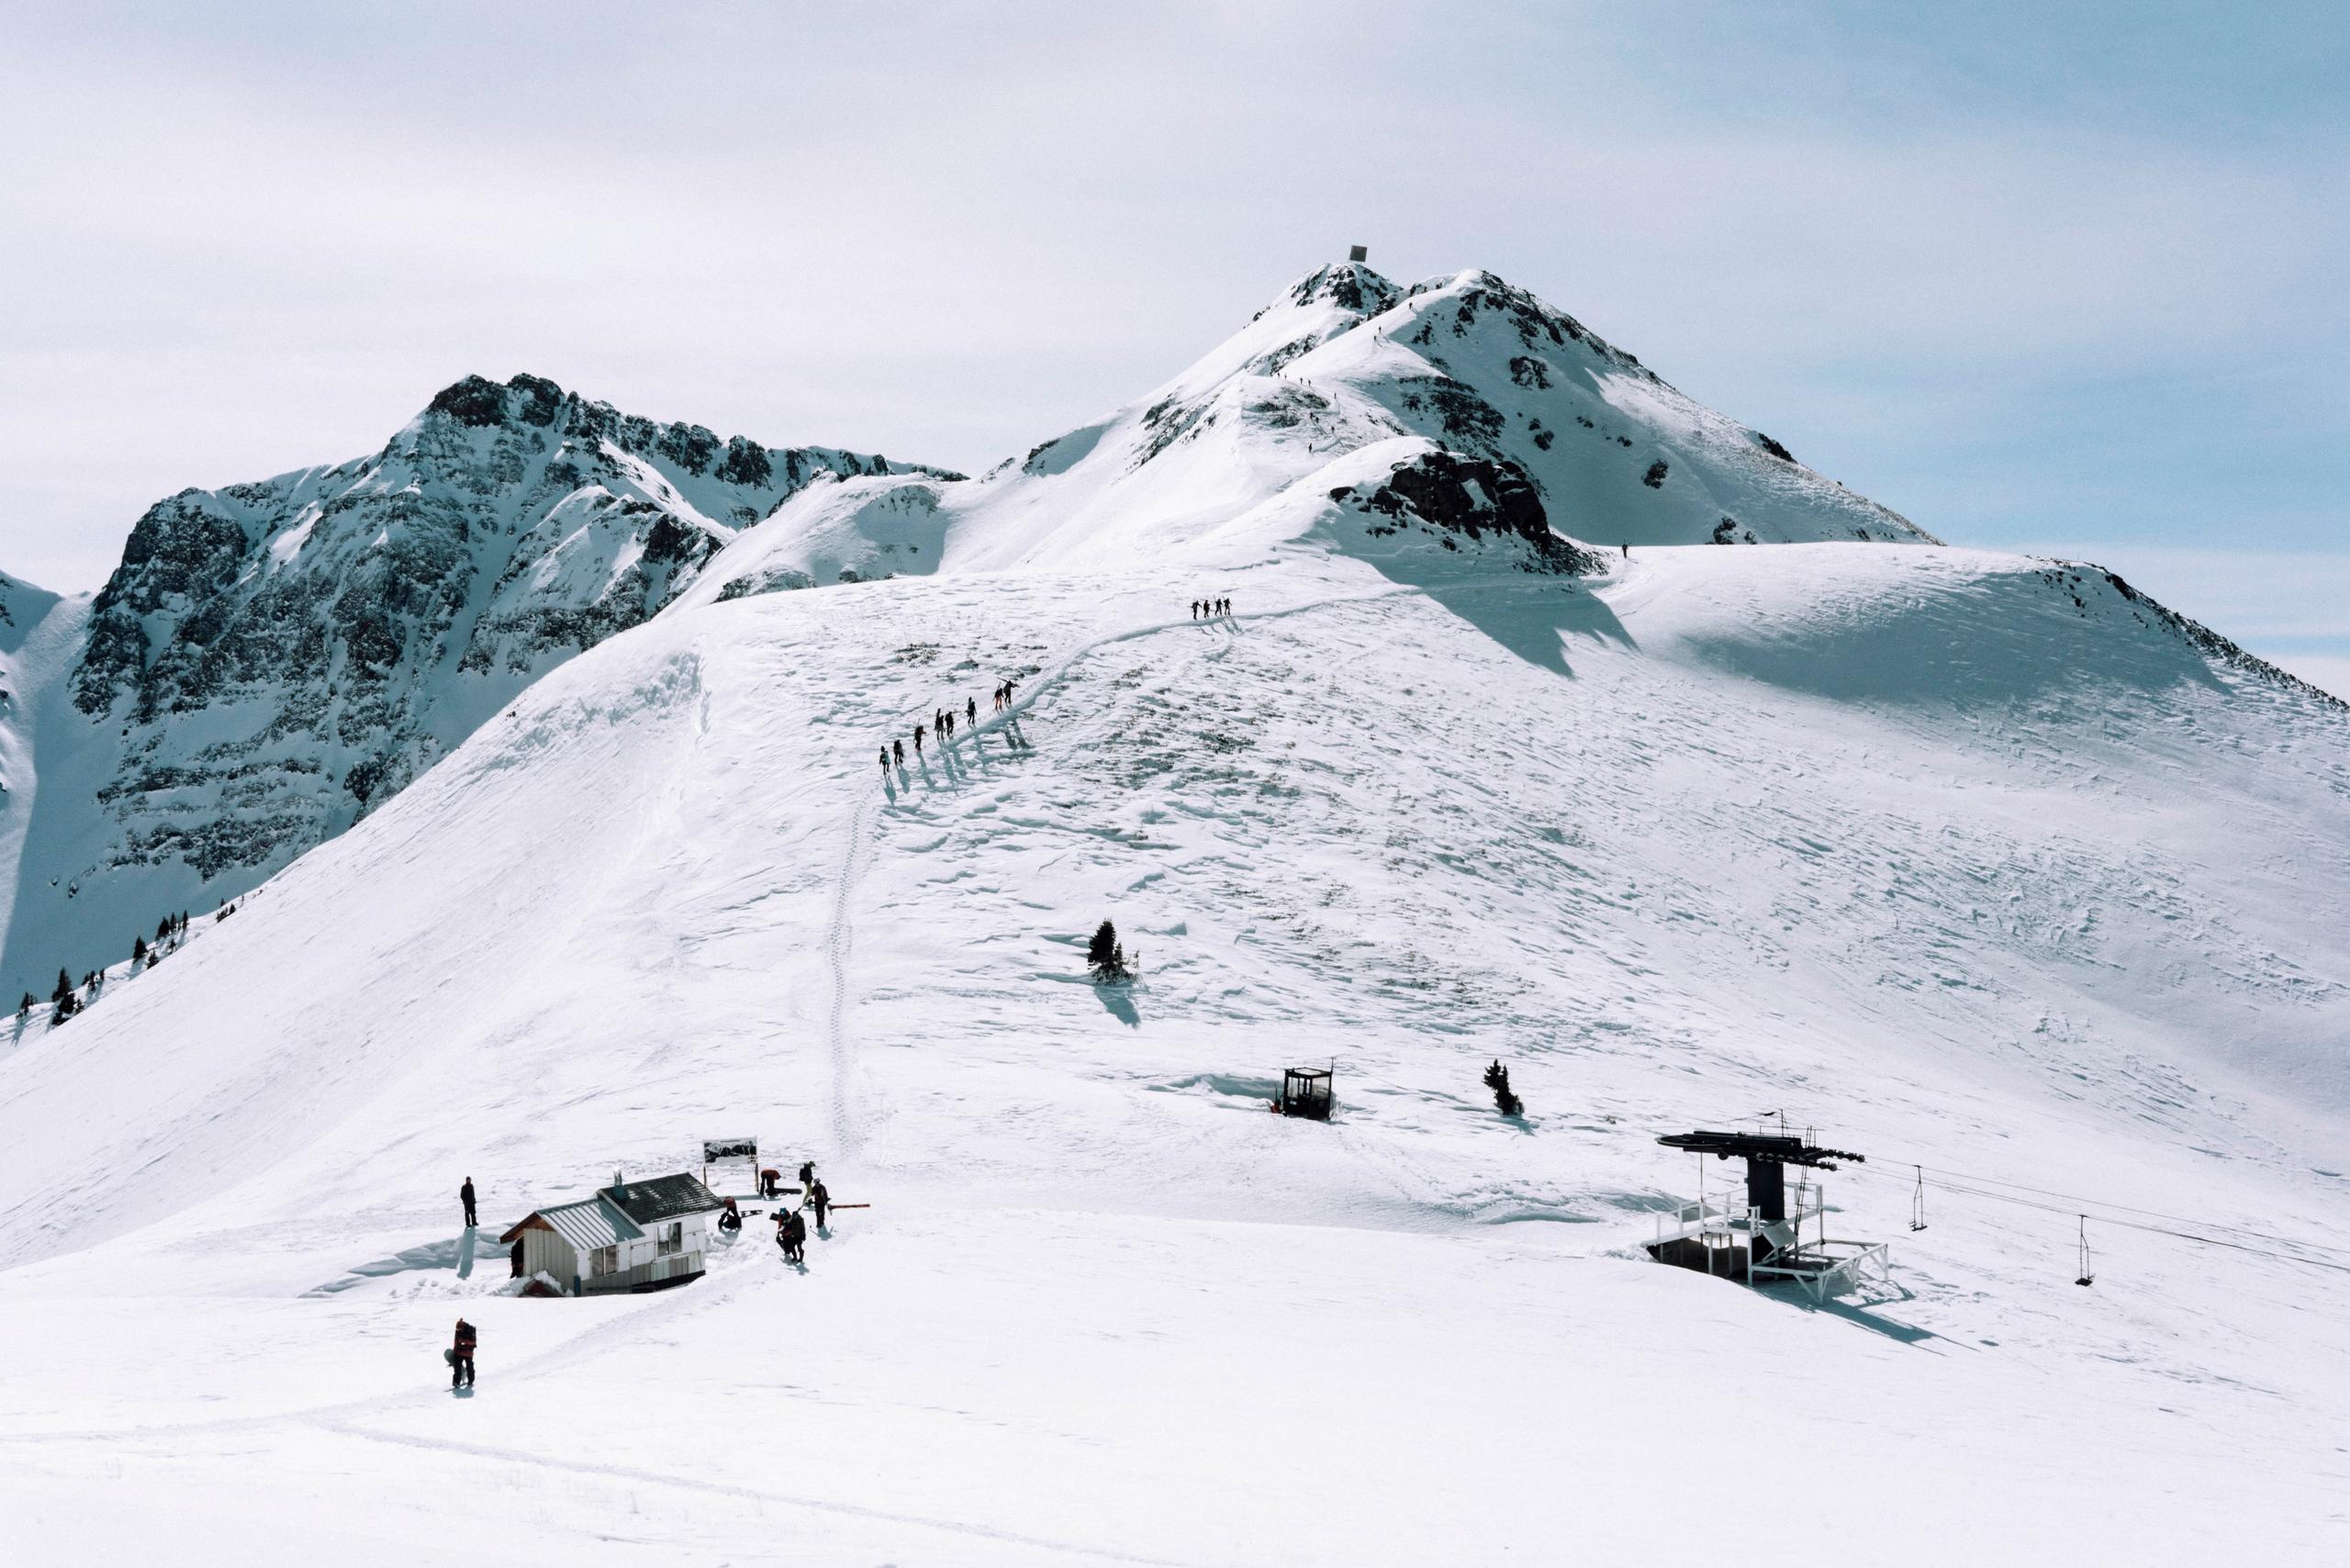 Expansive view of Silverton mountain with ski runs